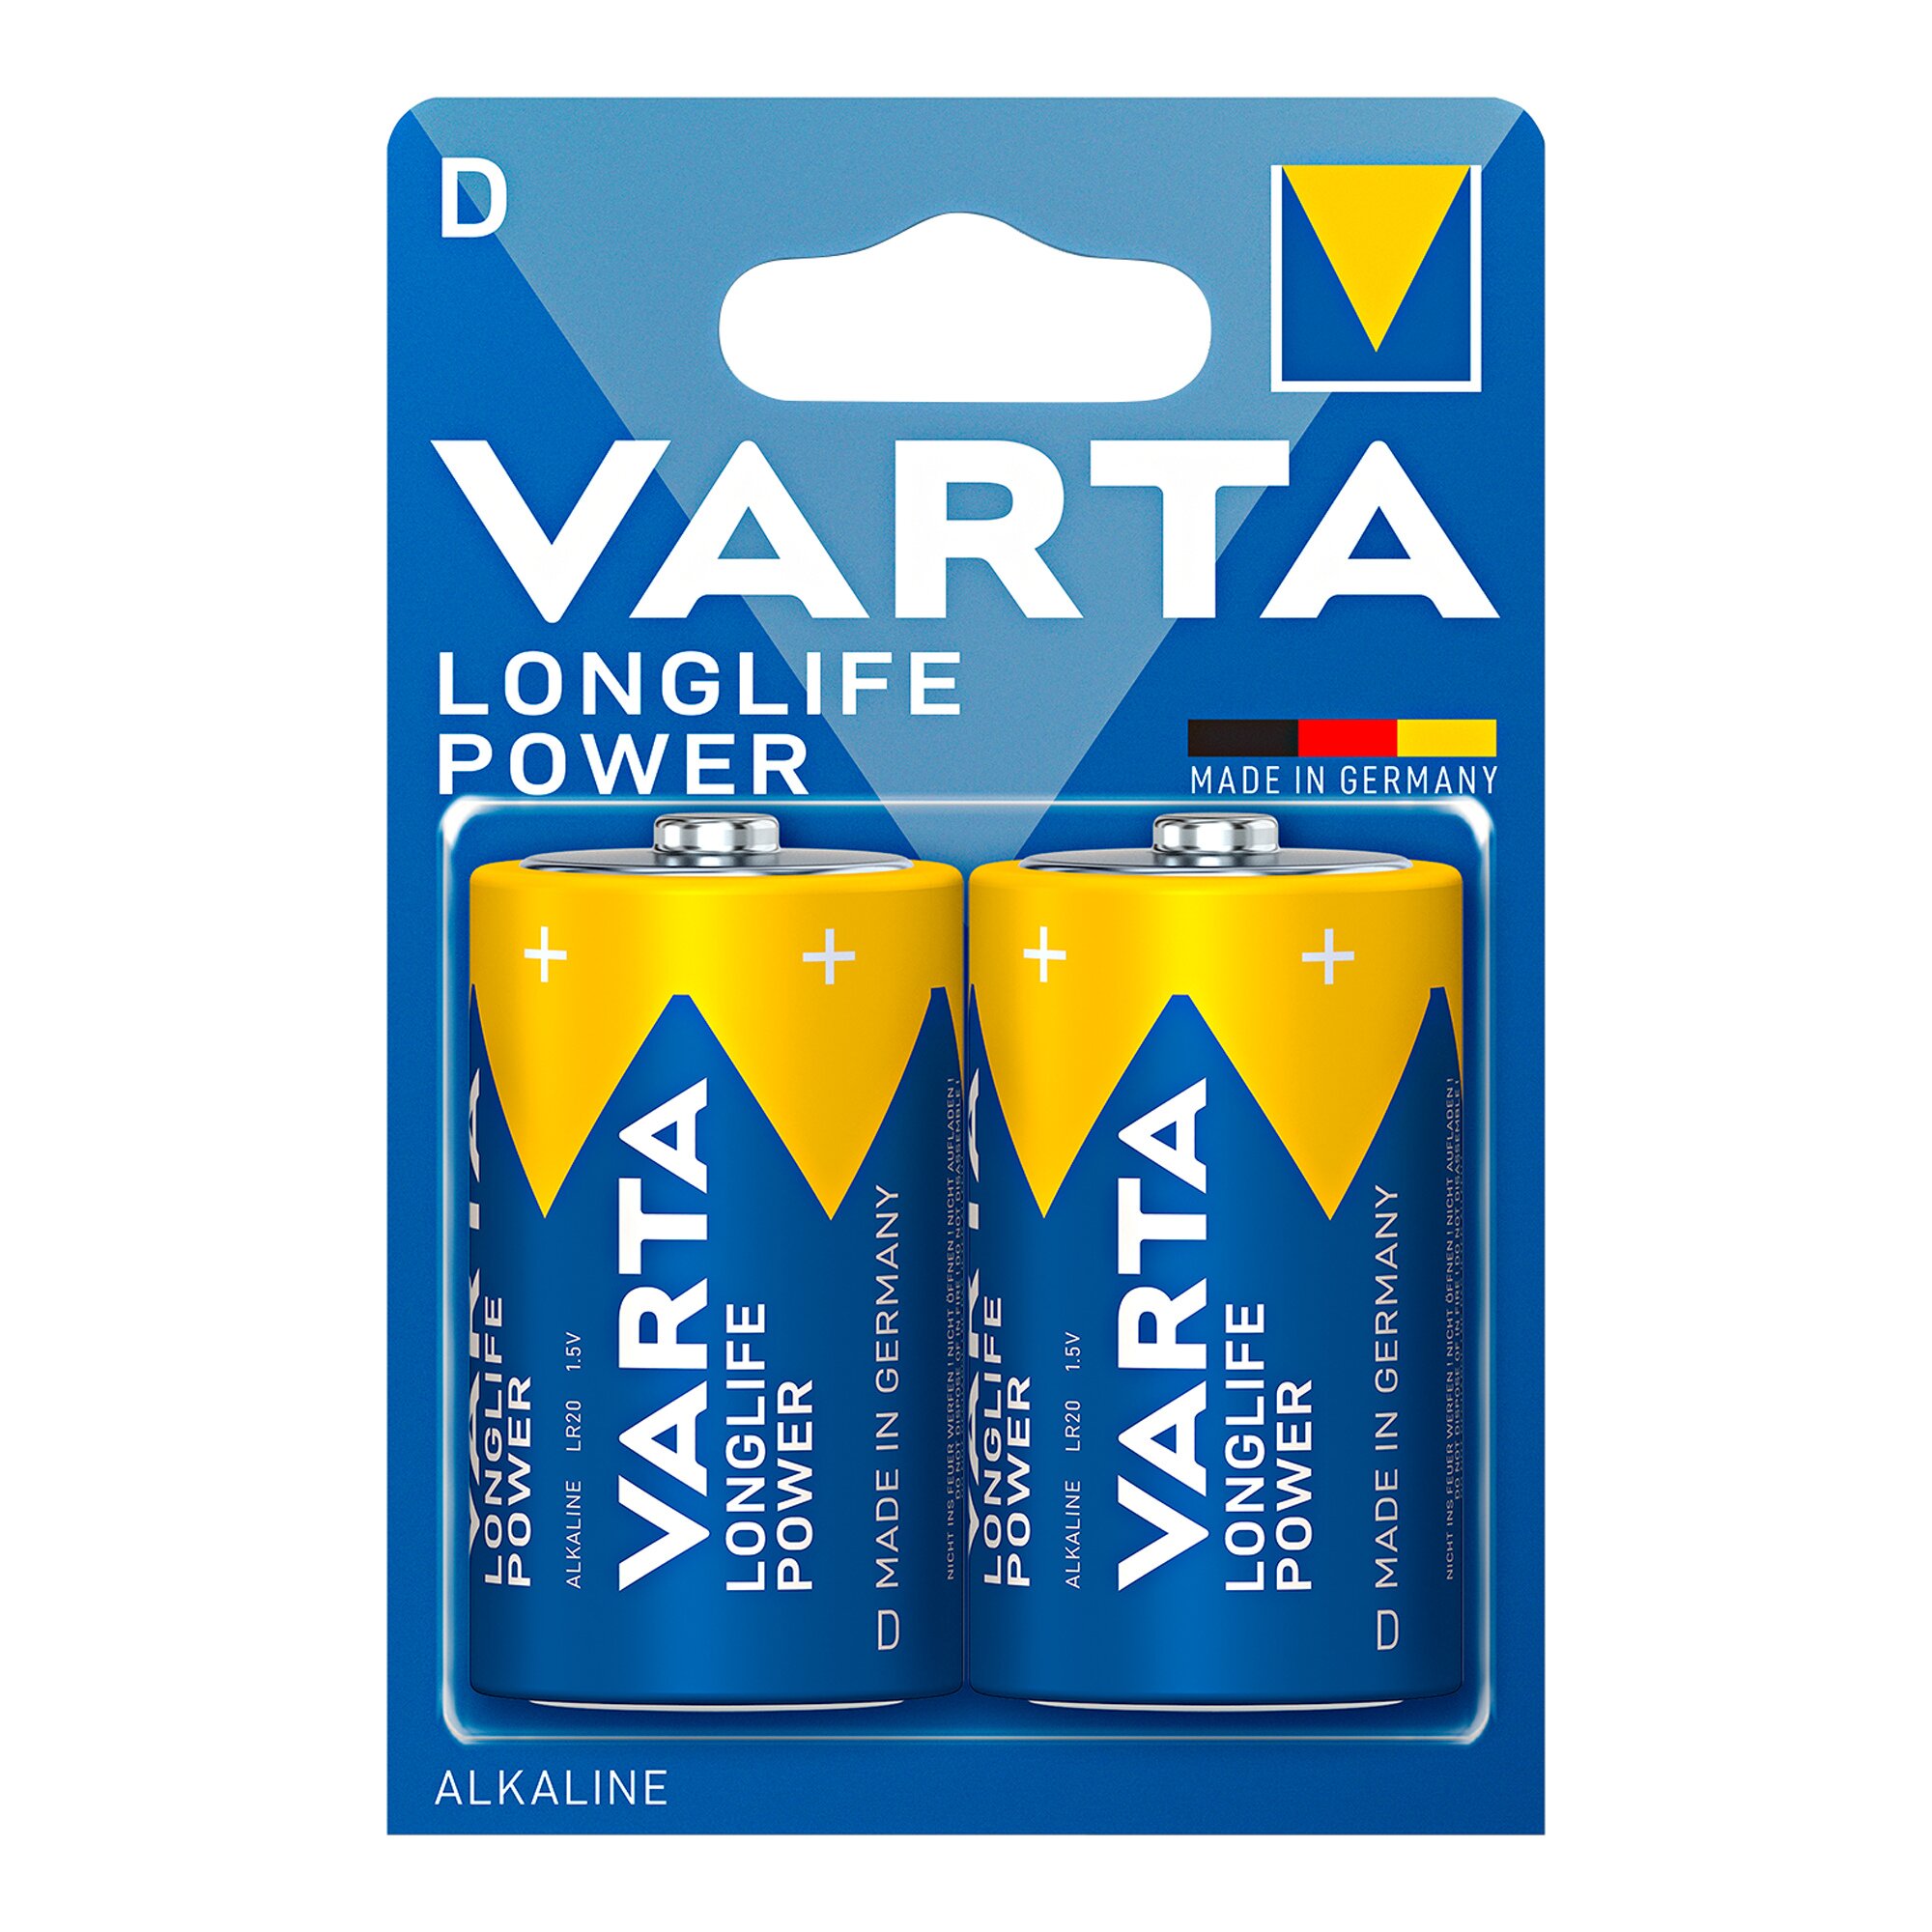 Image of Varta-Longlife-Power-Batterien, 2 Stück